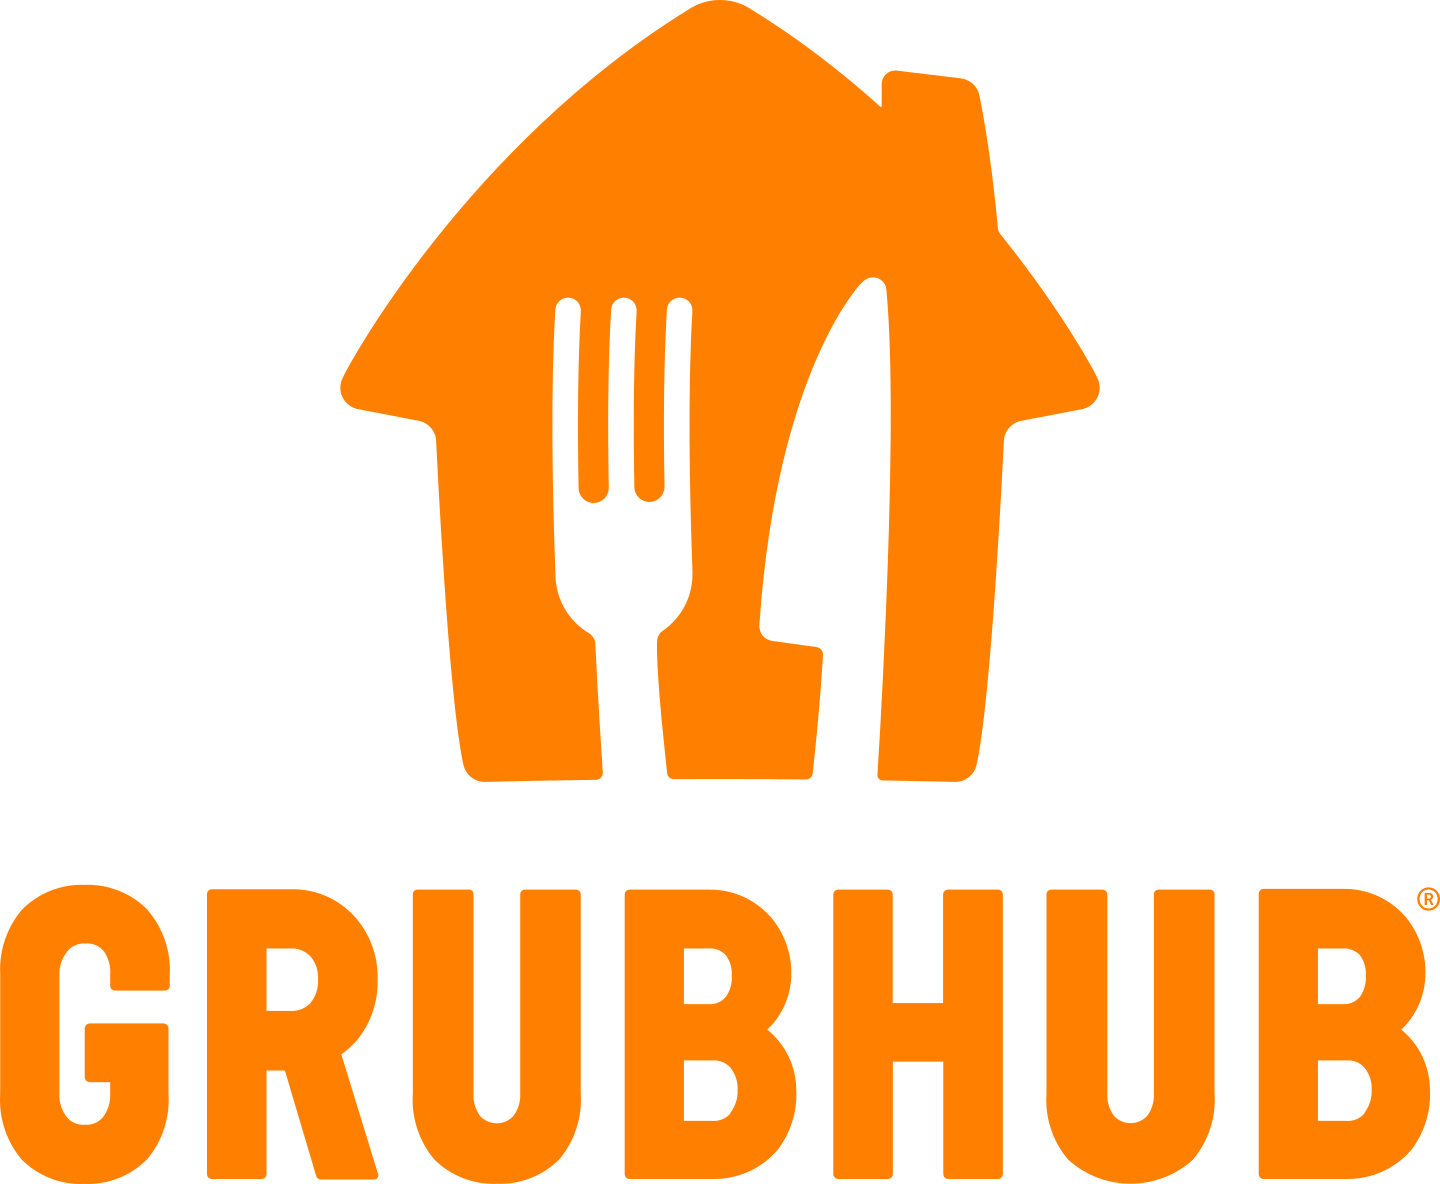 grubhub logo 3 - GrubHub Logo